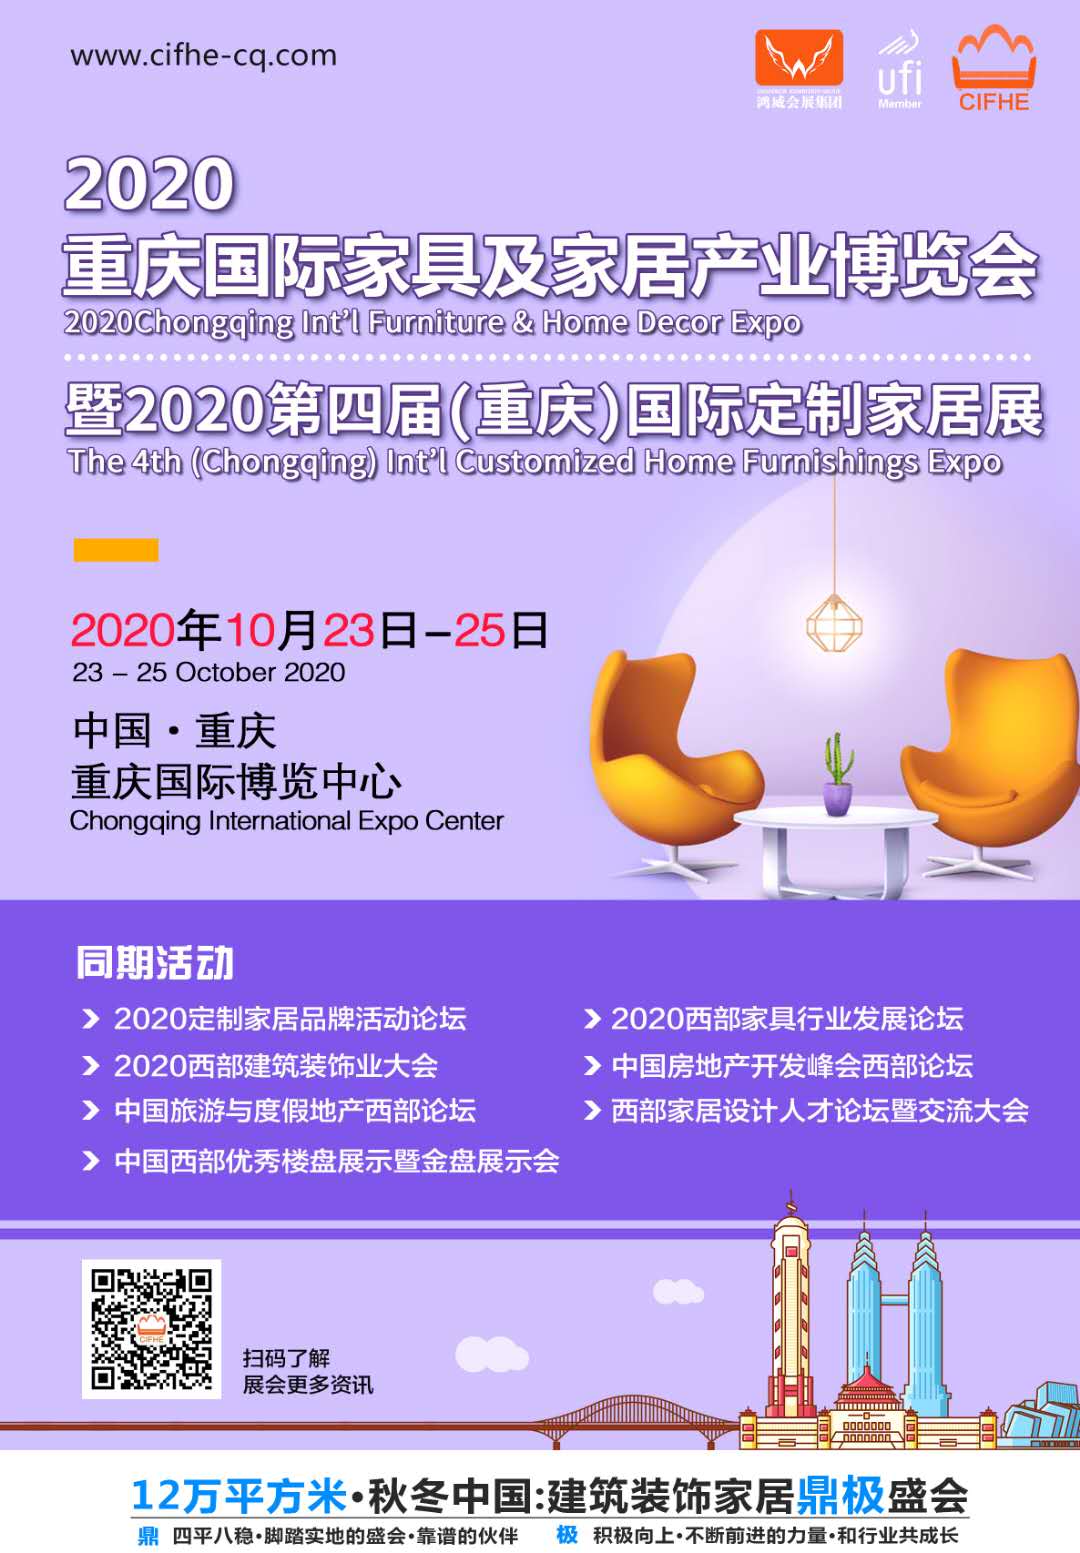 2020重庆国际建筑装饰博览会